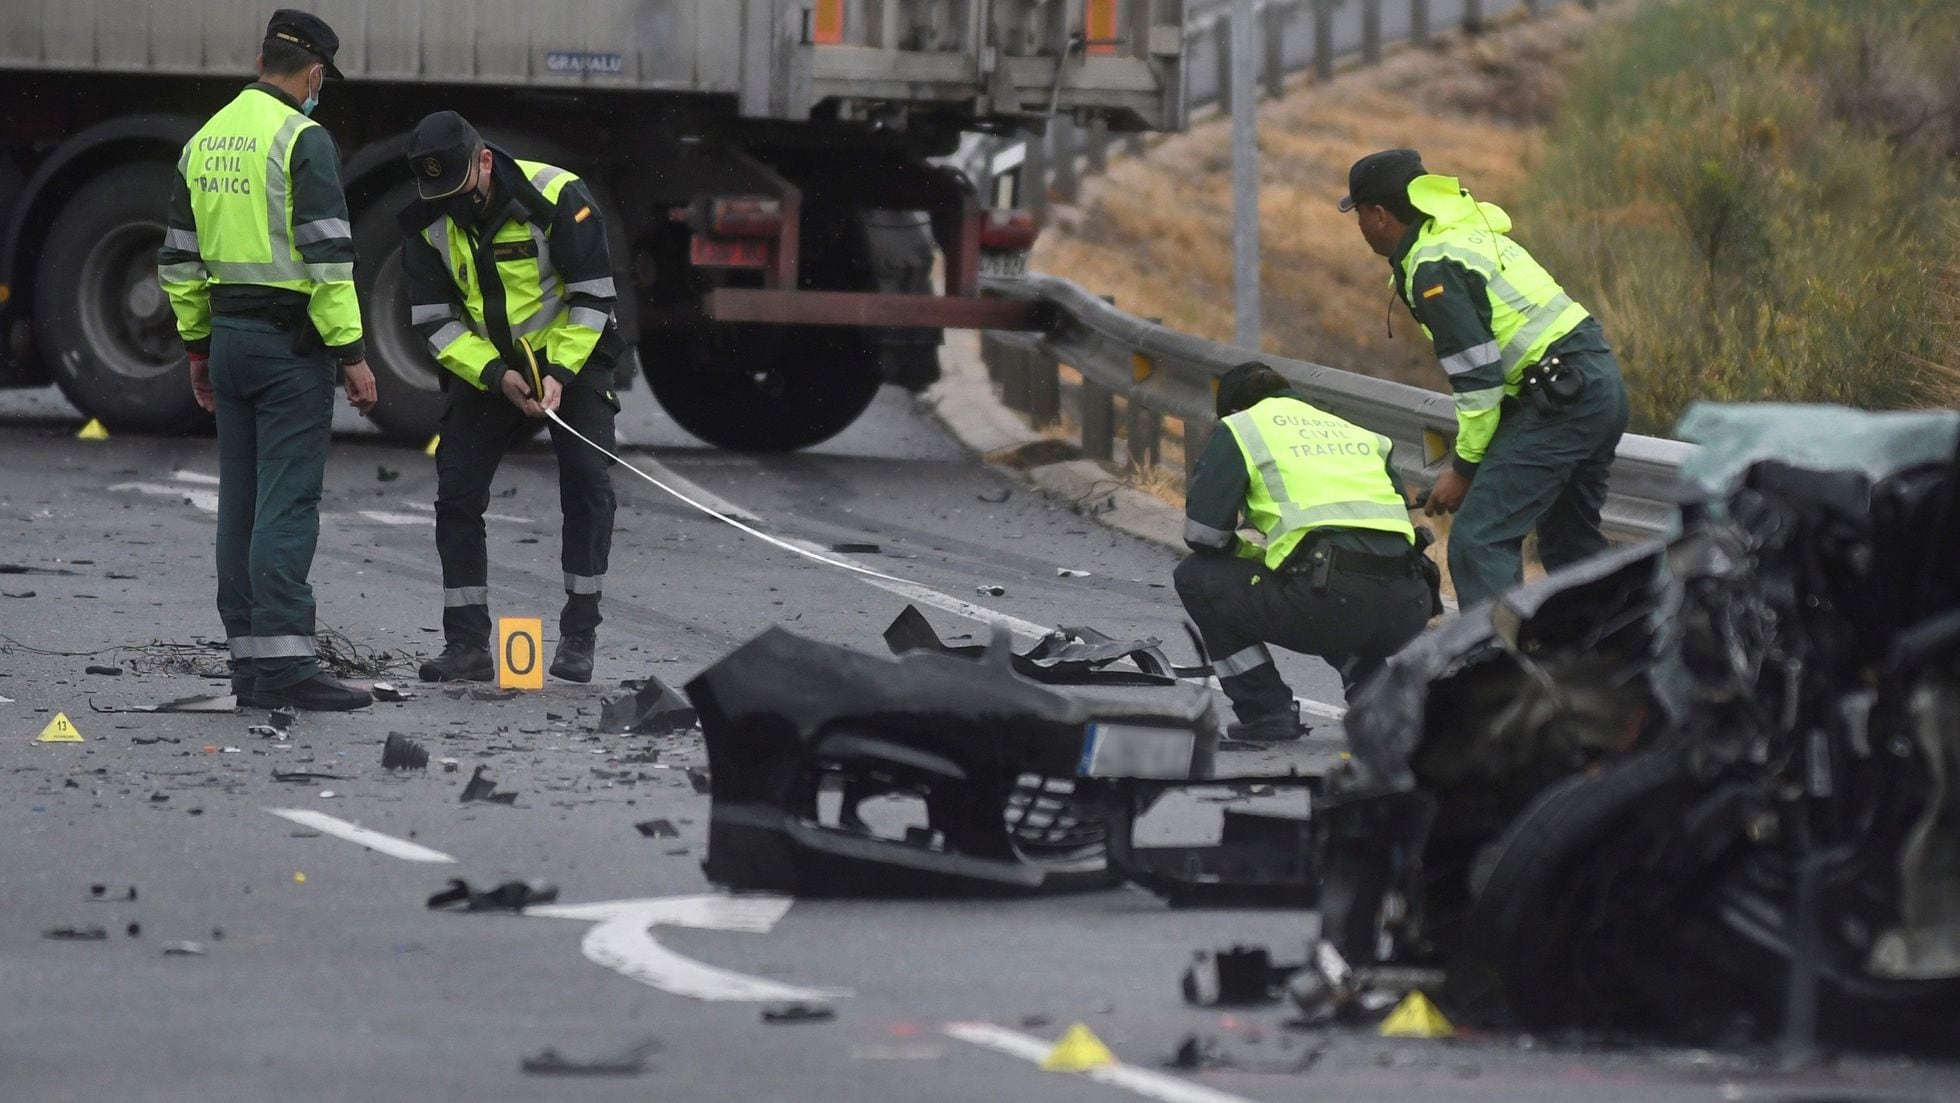 Las muertes en accidentes de tráfico caen en España casi un 80% en 20 años  | España | EL PAÍS